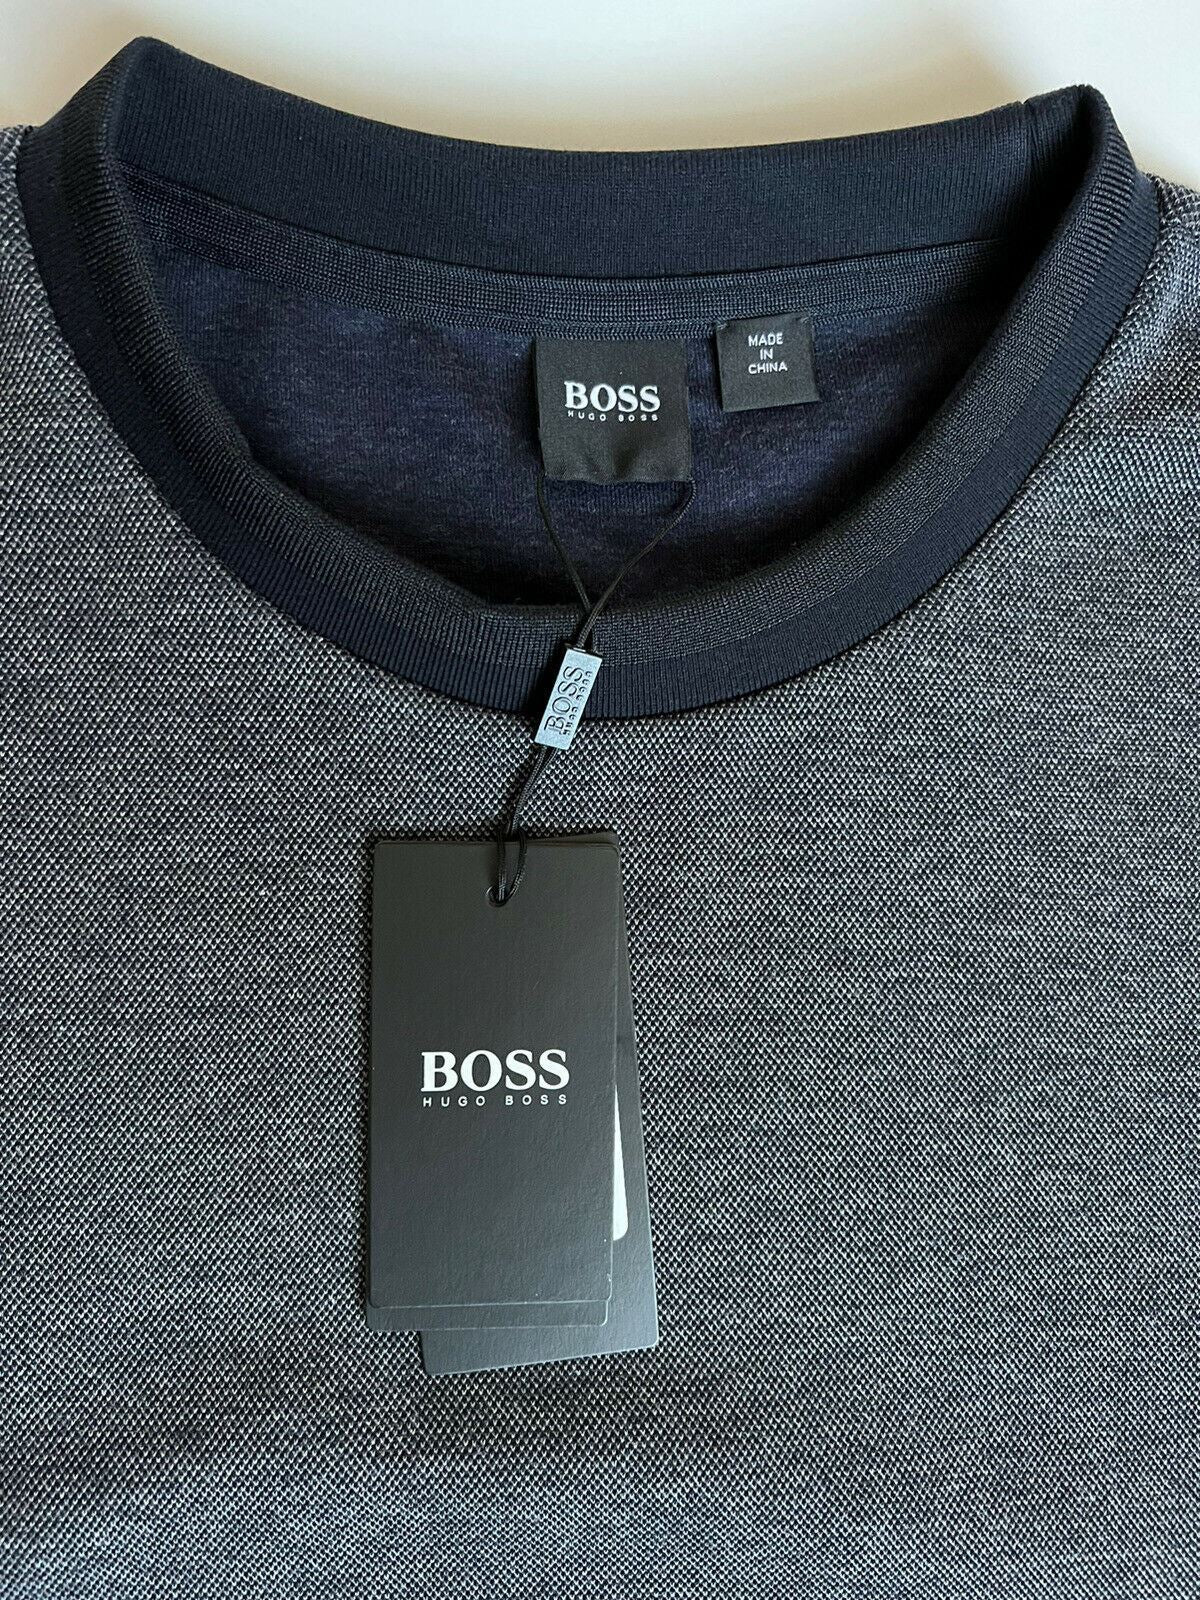 Neu mit Etikett: 158 $ BOSS Hugo Boss Herren-Pullover mit Rundhalsausschnitt, Grau, 2XL